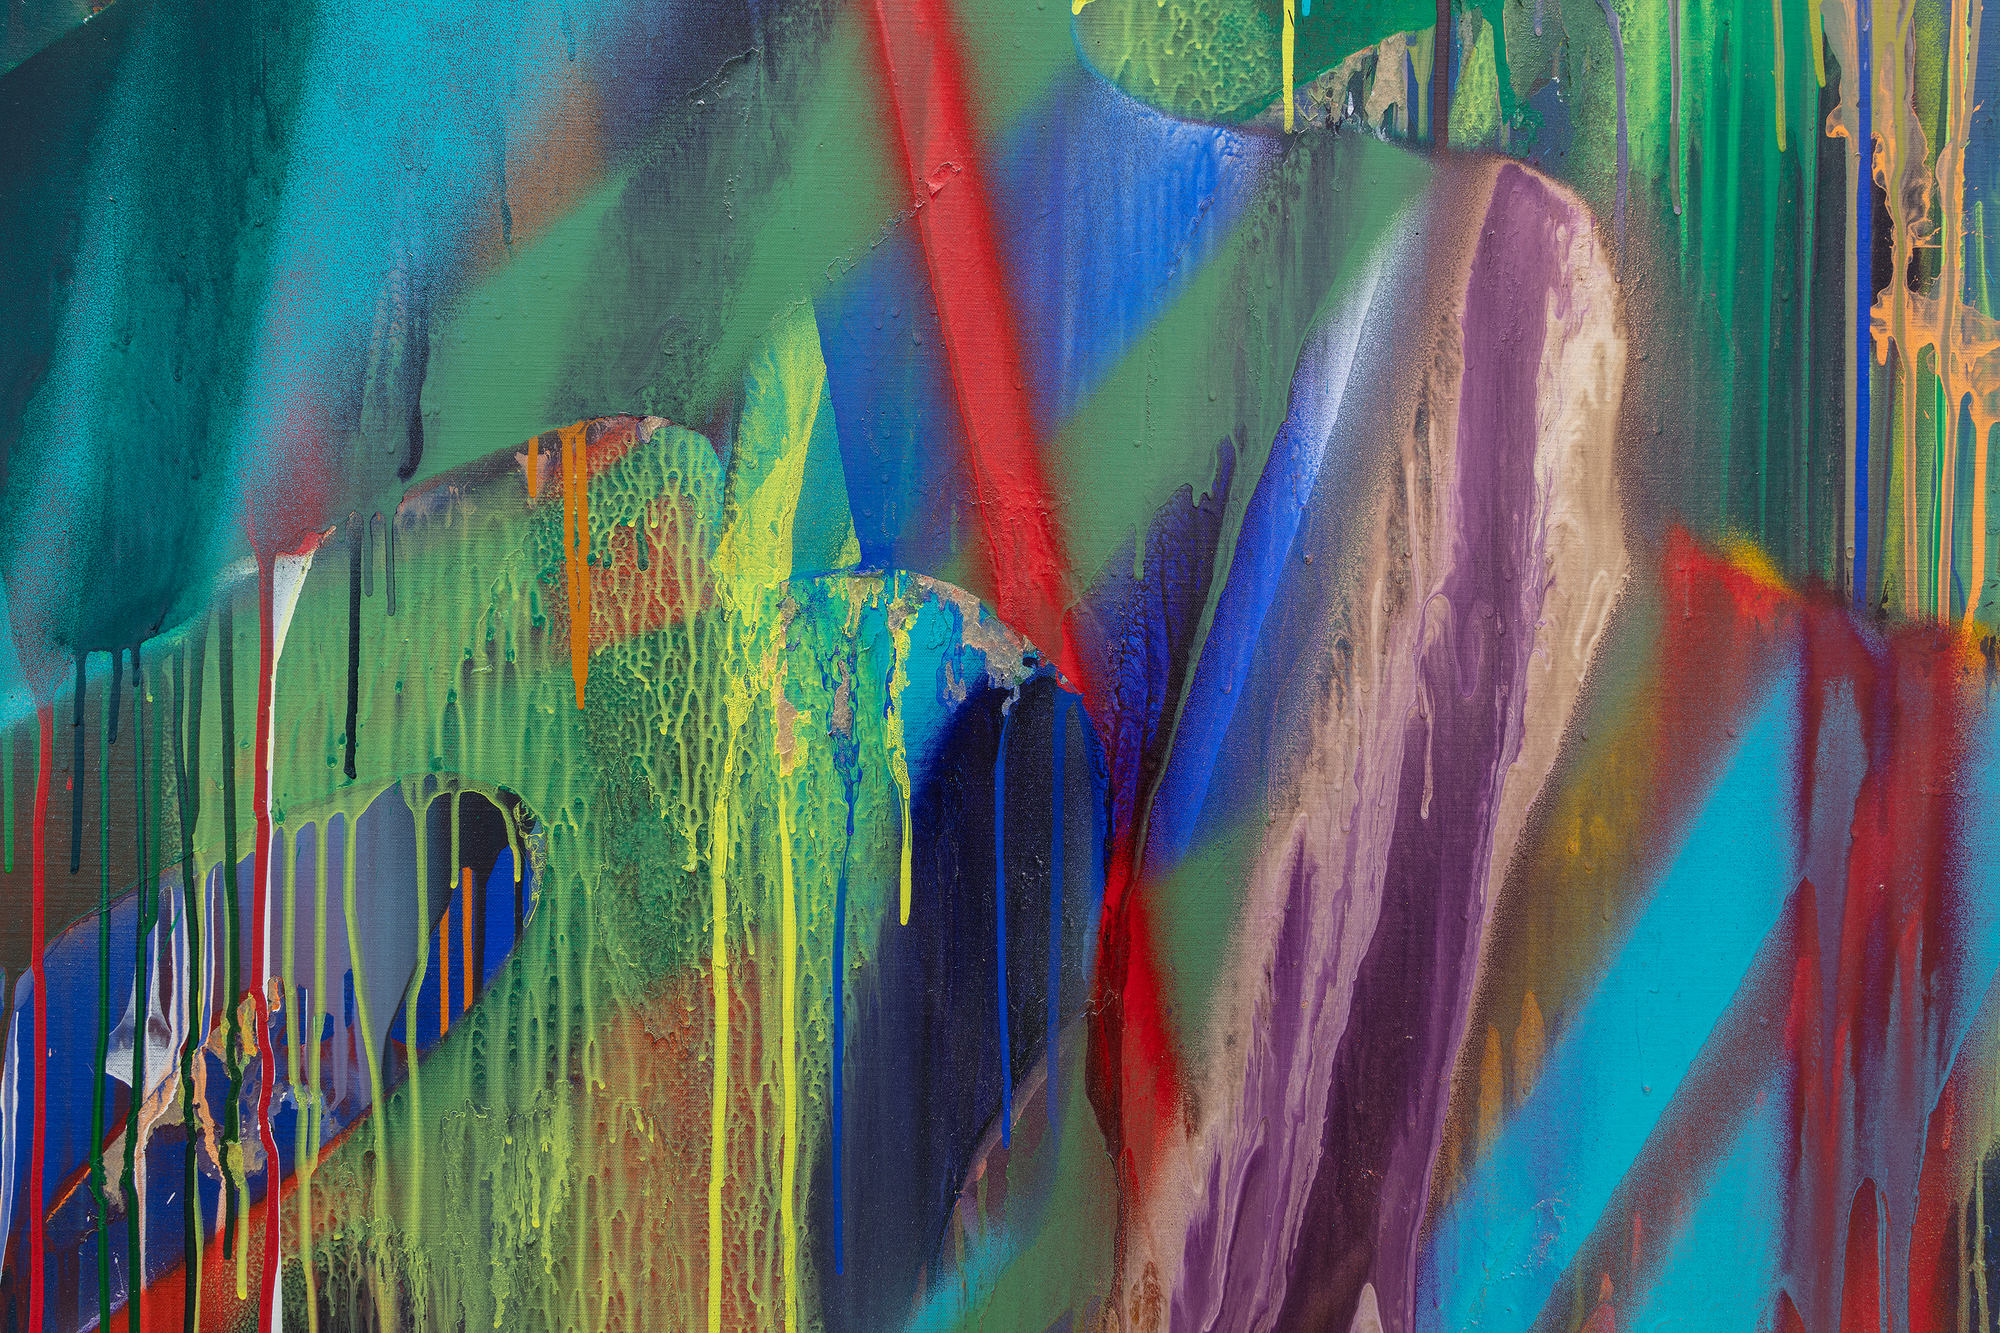 凯瑟琳-格罗斯（Katharine Grosse）2016 年的《无题》将我们对这位艺术家的欣赏延伸到了画布颜料这一传统媒介上，她将在其不朽建筑装置作品中看到的活力、大胆和对传统的漠视带到了画布上。色彩从复杂而层次丰富的表面中迸发出来，这些表面由流淌、滴落或飞溅的颜料浇筑而成，还有光芒四射的透明面纱，以及雾状的重叠色带，形成柔和的渐变过渡。作品给人以空间深度和立体感的迷人印象。同时，这也是格罗斯将混乱与控制、自发性与意向性完美融合的杰作。她的一系列技法在偶然与刻意之间创造了引人入胜的对话，这是她独特风格的标志。